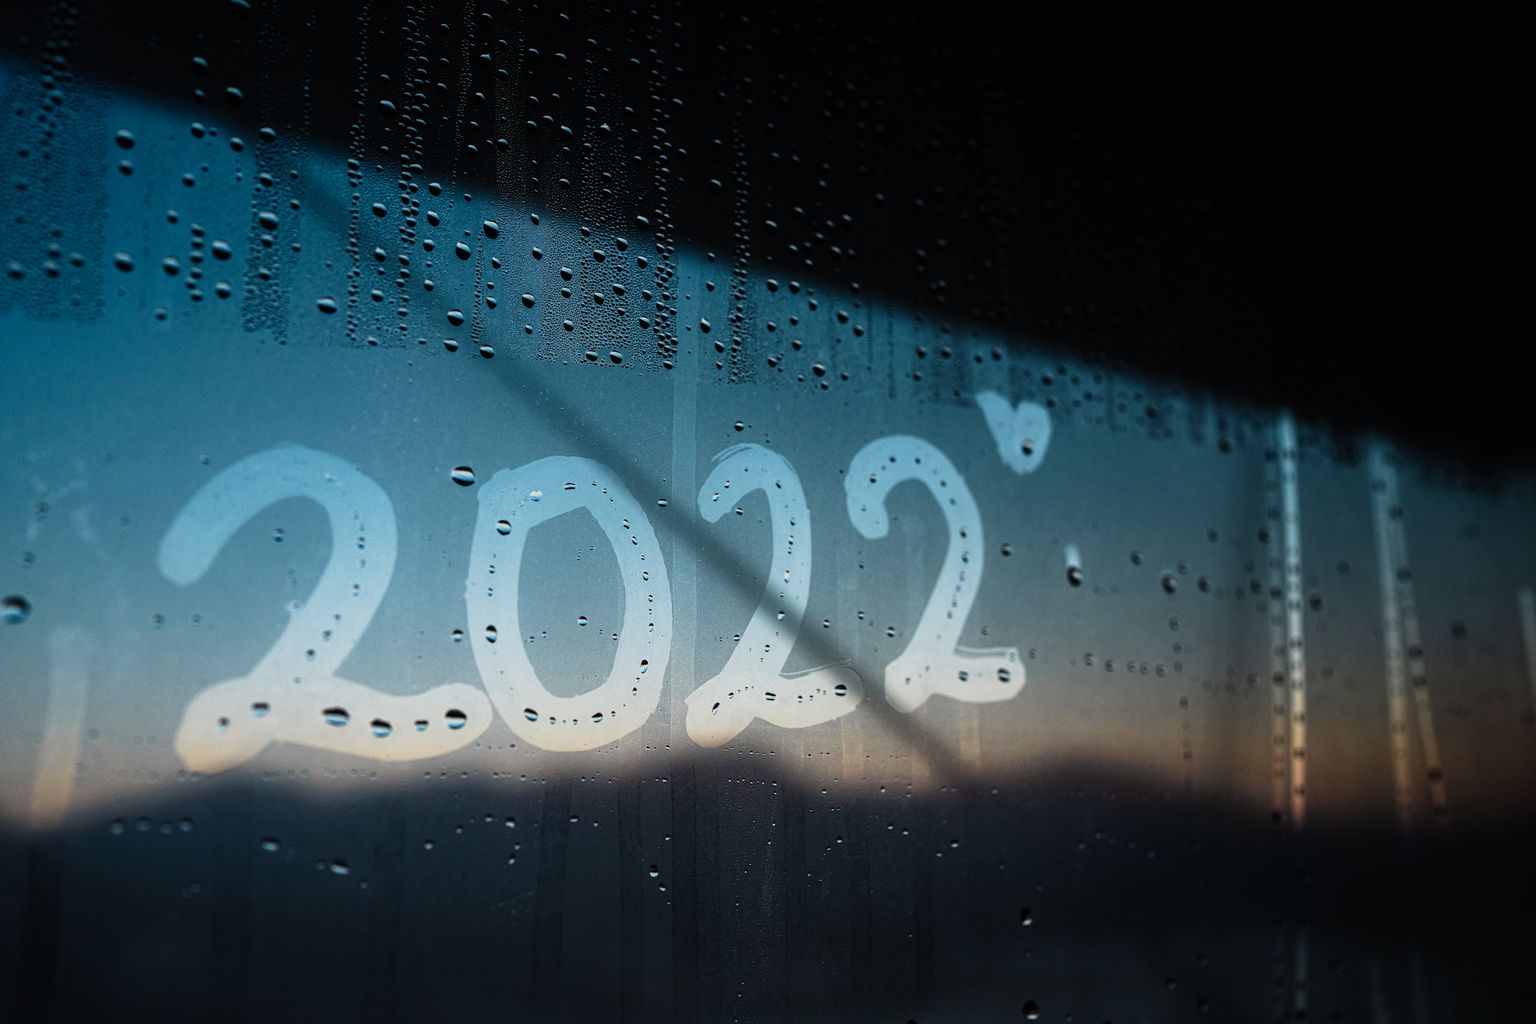 2022 год